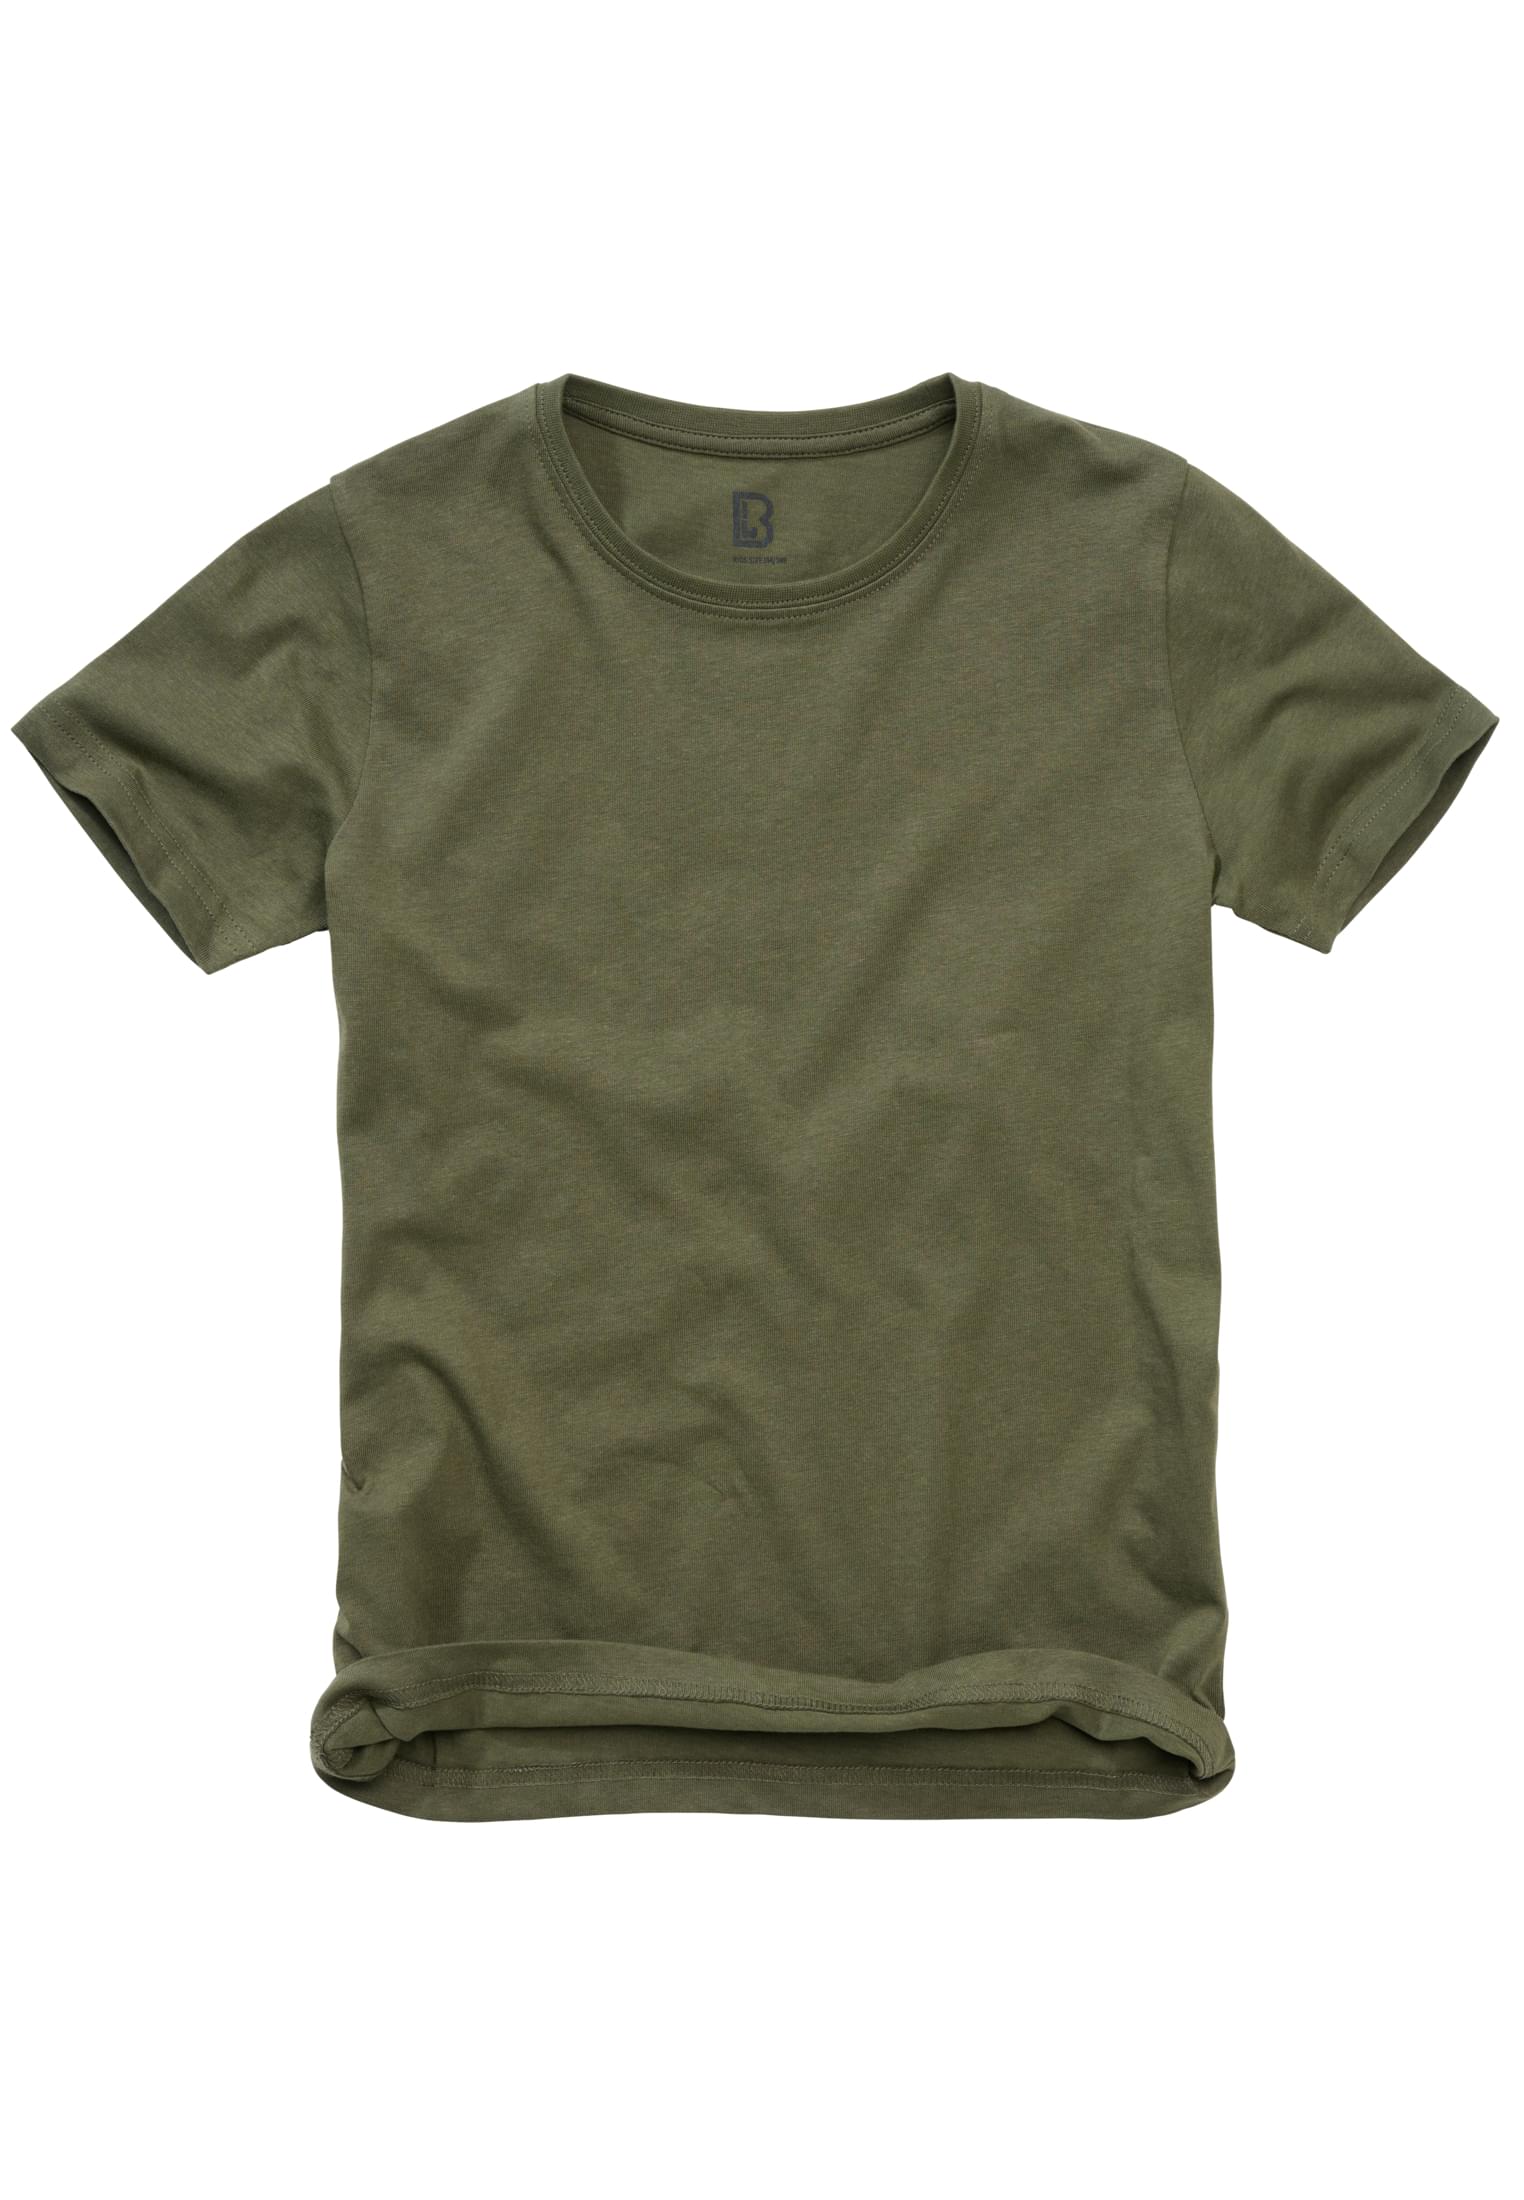 Children's T-shirt Olive